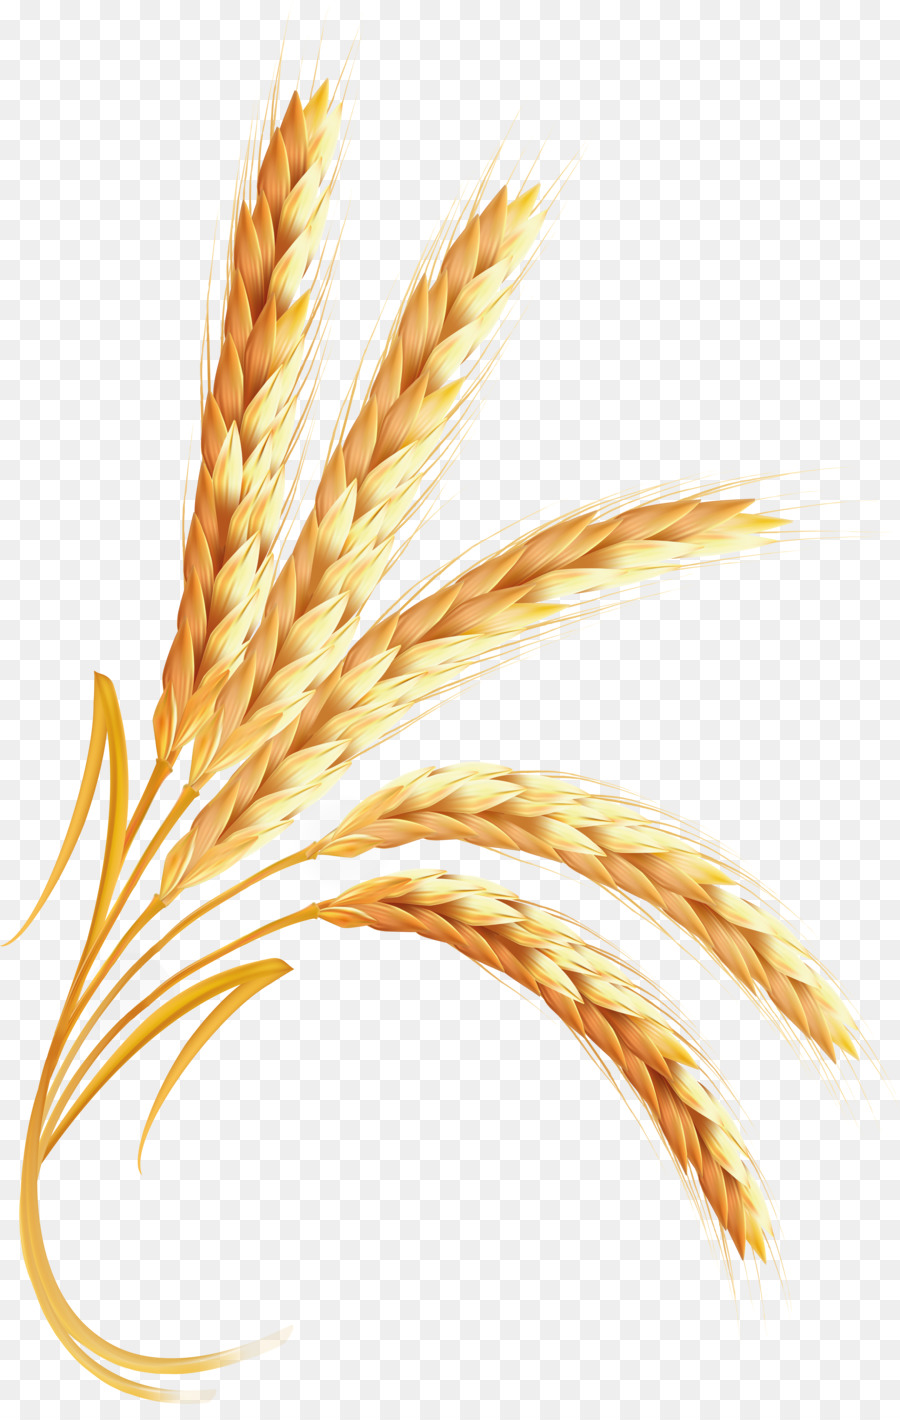 Wheat cartoon clipart.